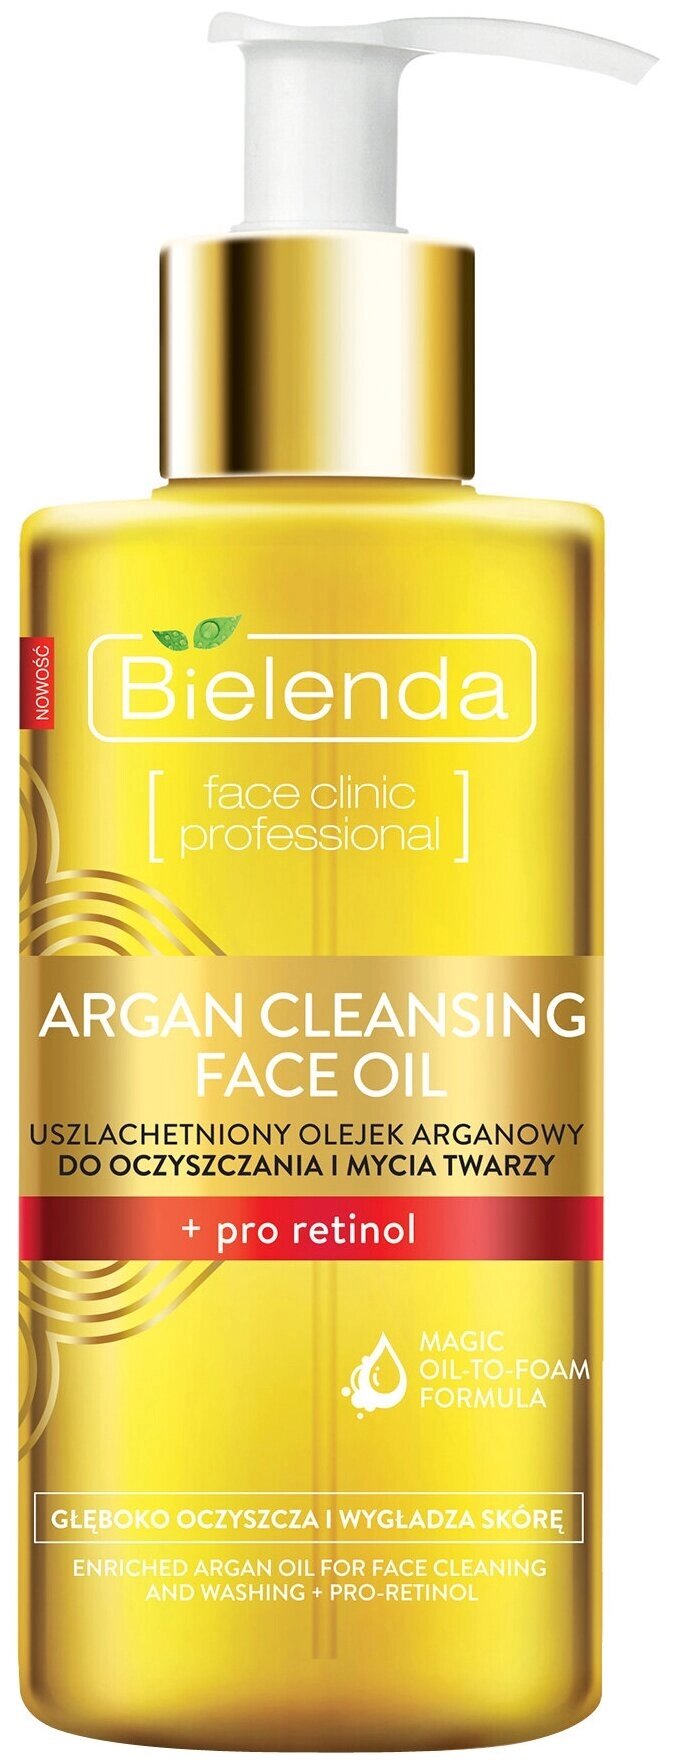 Гидрофильное масло для умывания Bielenda Argan Cleansing Face Oil с про-ретинолом, 140 мл от компании Скажи здоровью ДА! - фото 1